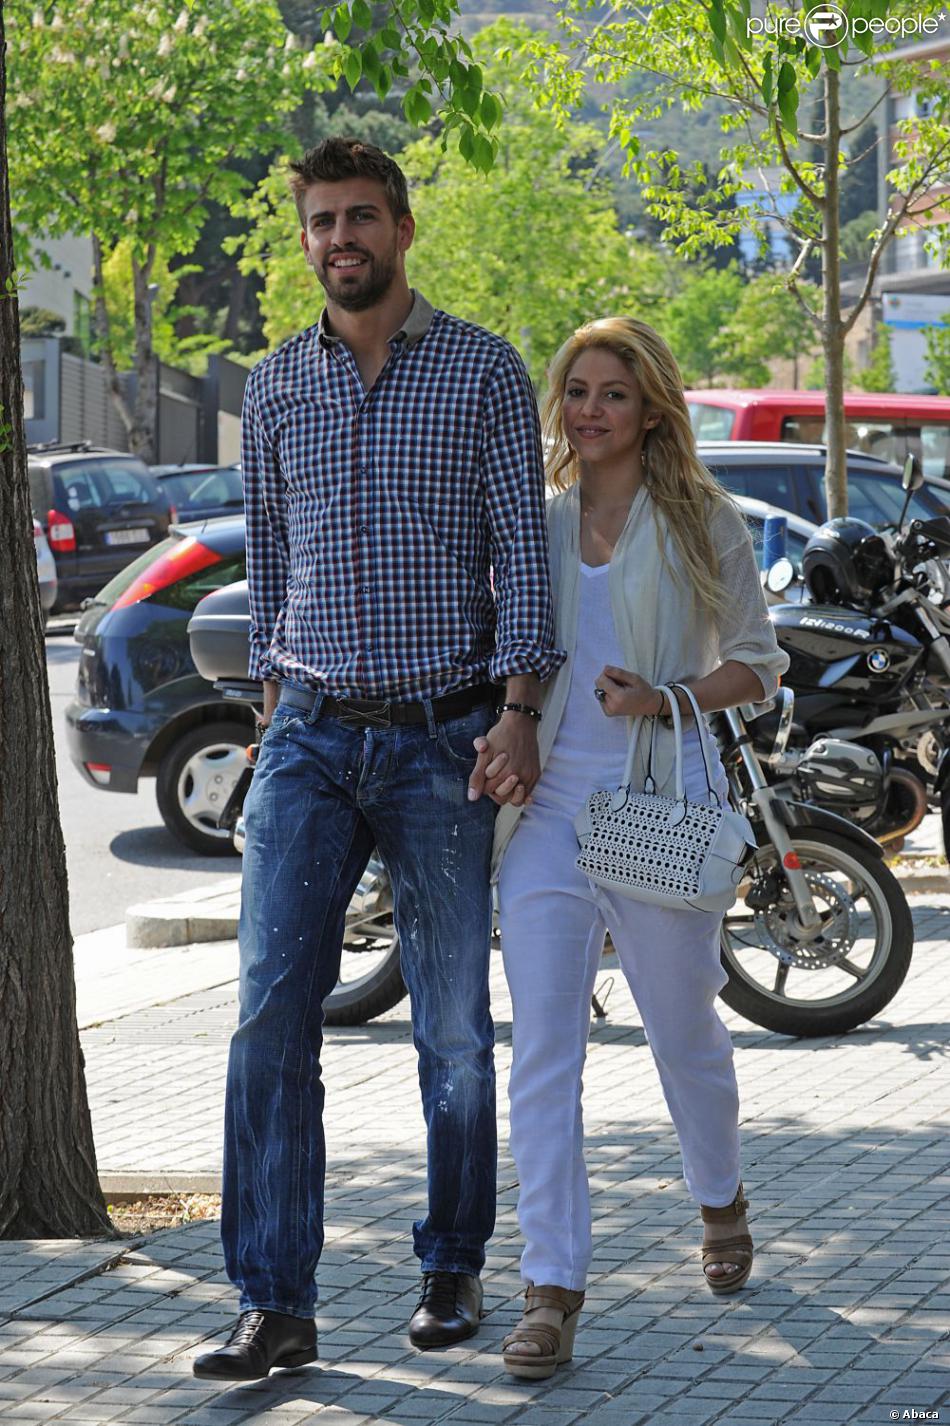 Shakira se promène avec son nouveau petit ami, le footballeur espagnol Gerard Pique. Barcelone, 15 avril 2011